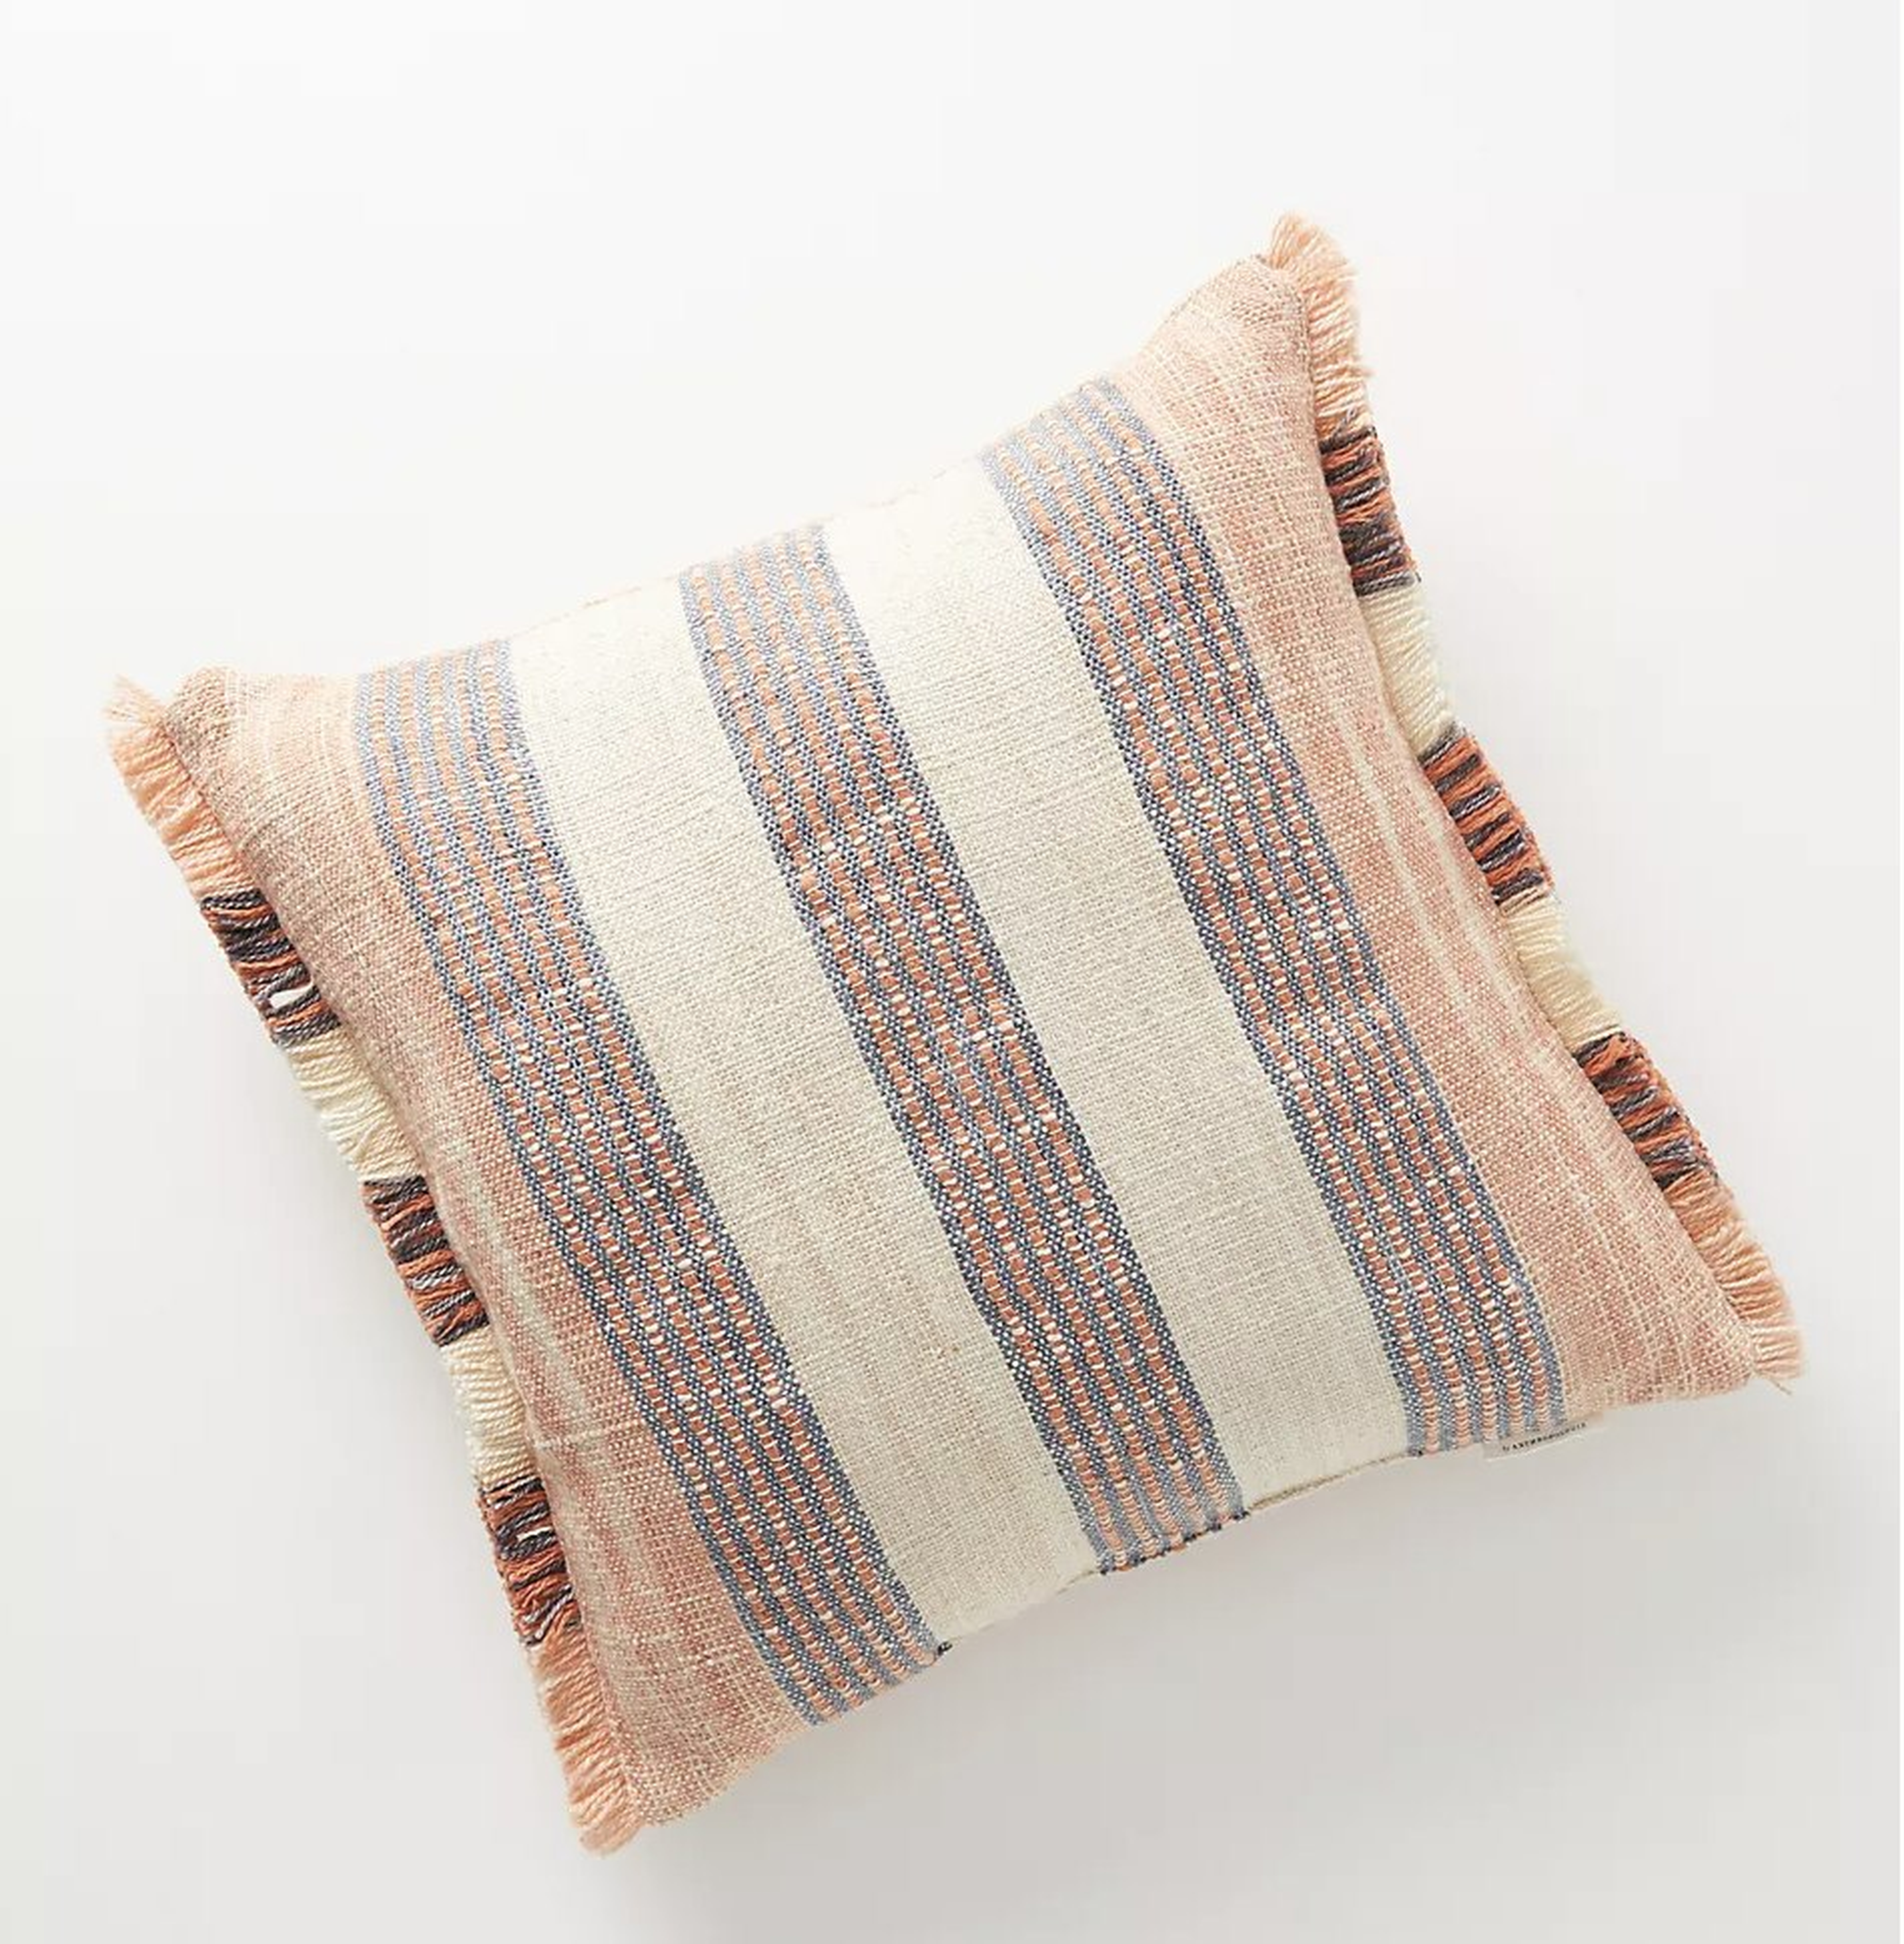 Somerset Indoor/Outdoor Pillow, Multi, 20" x 20" - Anthropologie